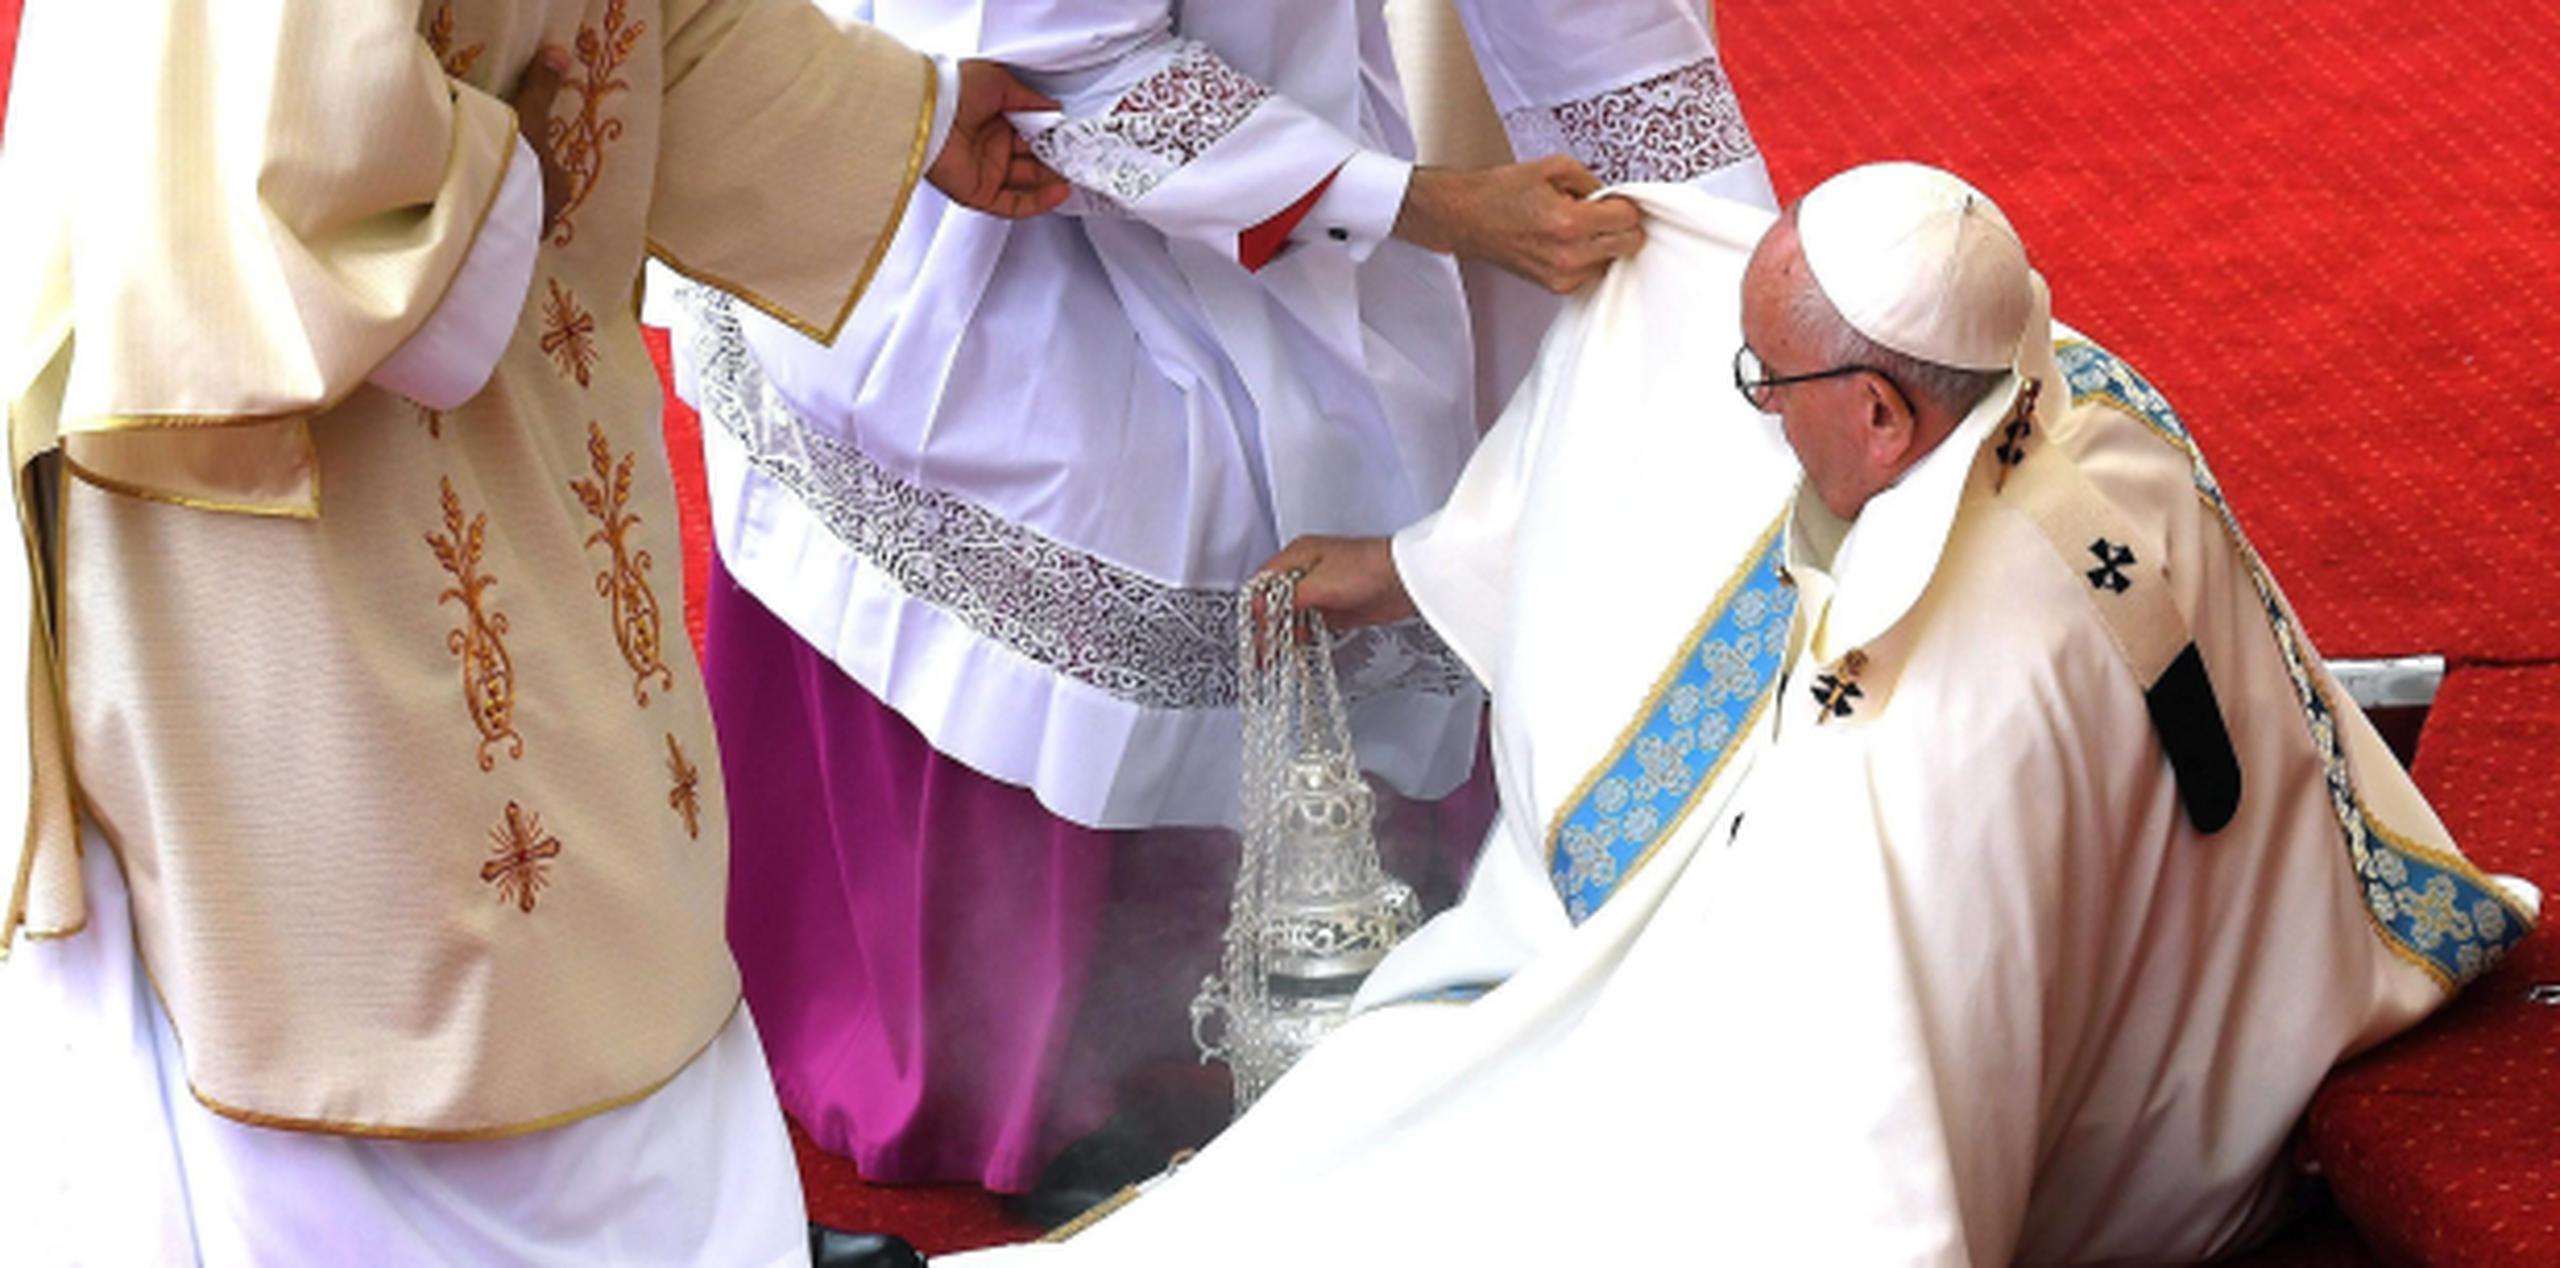 La misa continuó sin percance y el pontífice ofreció un extenso sermón ante decenas de miles de personas. (EFE)